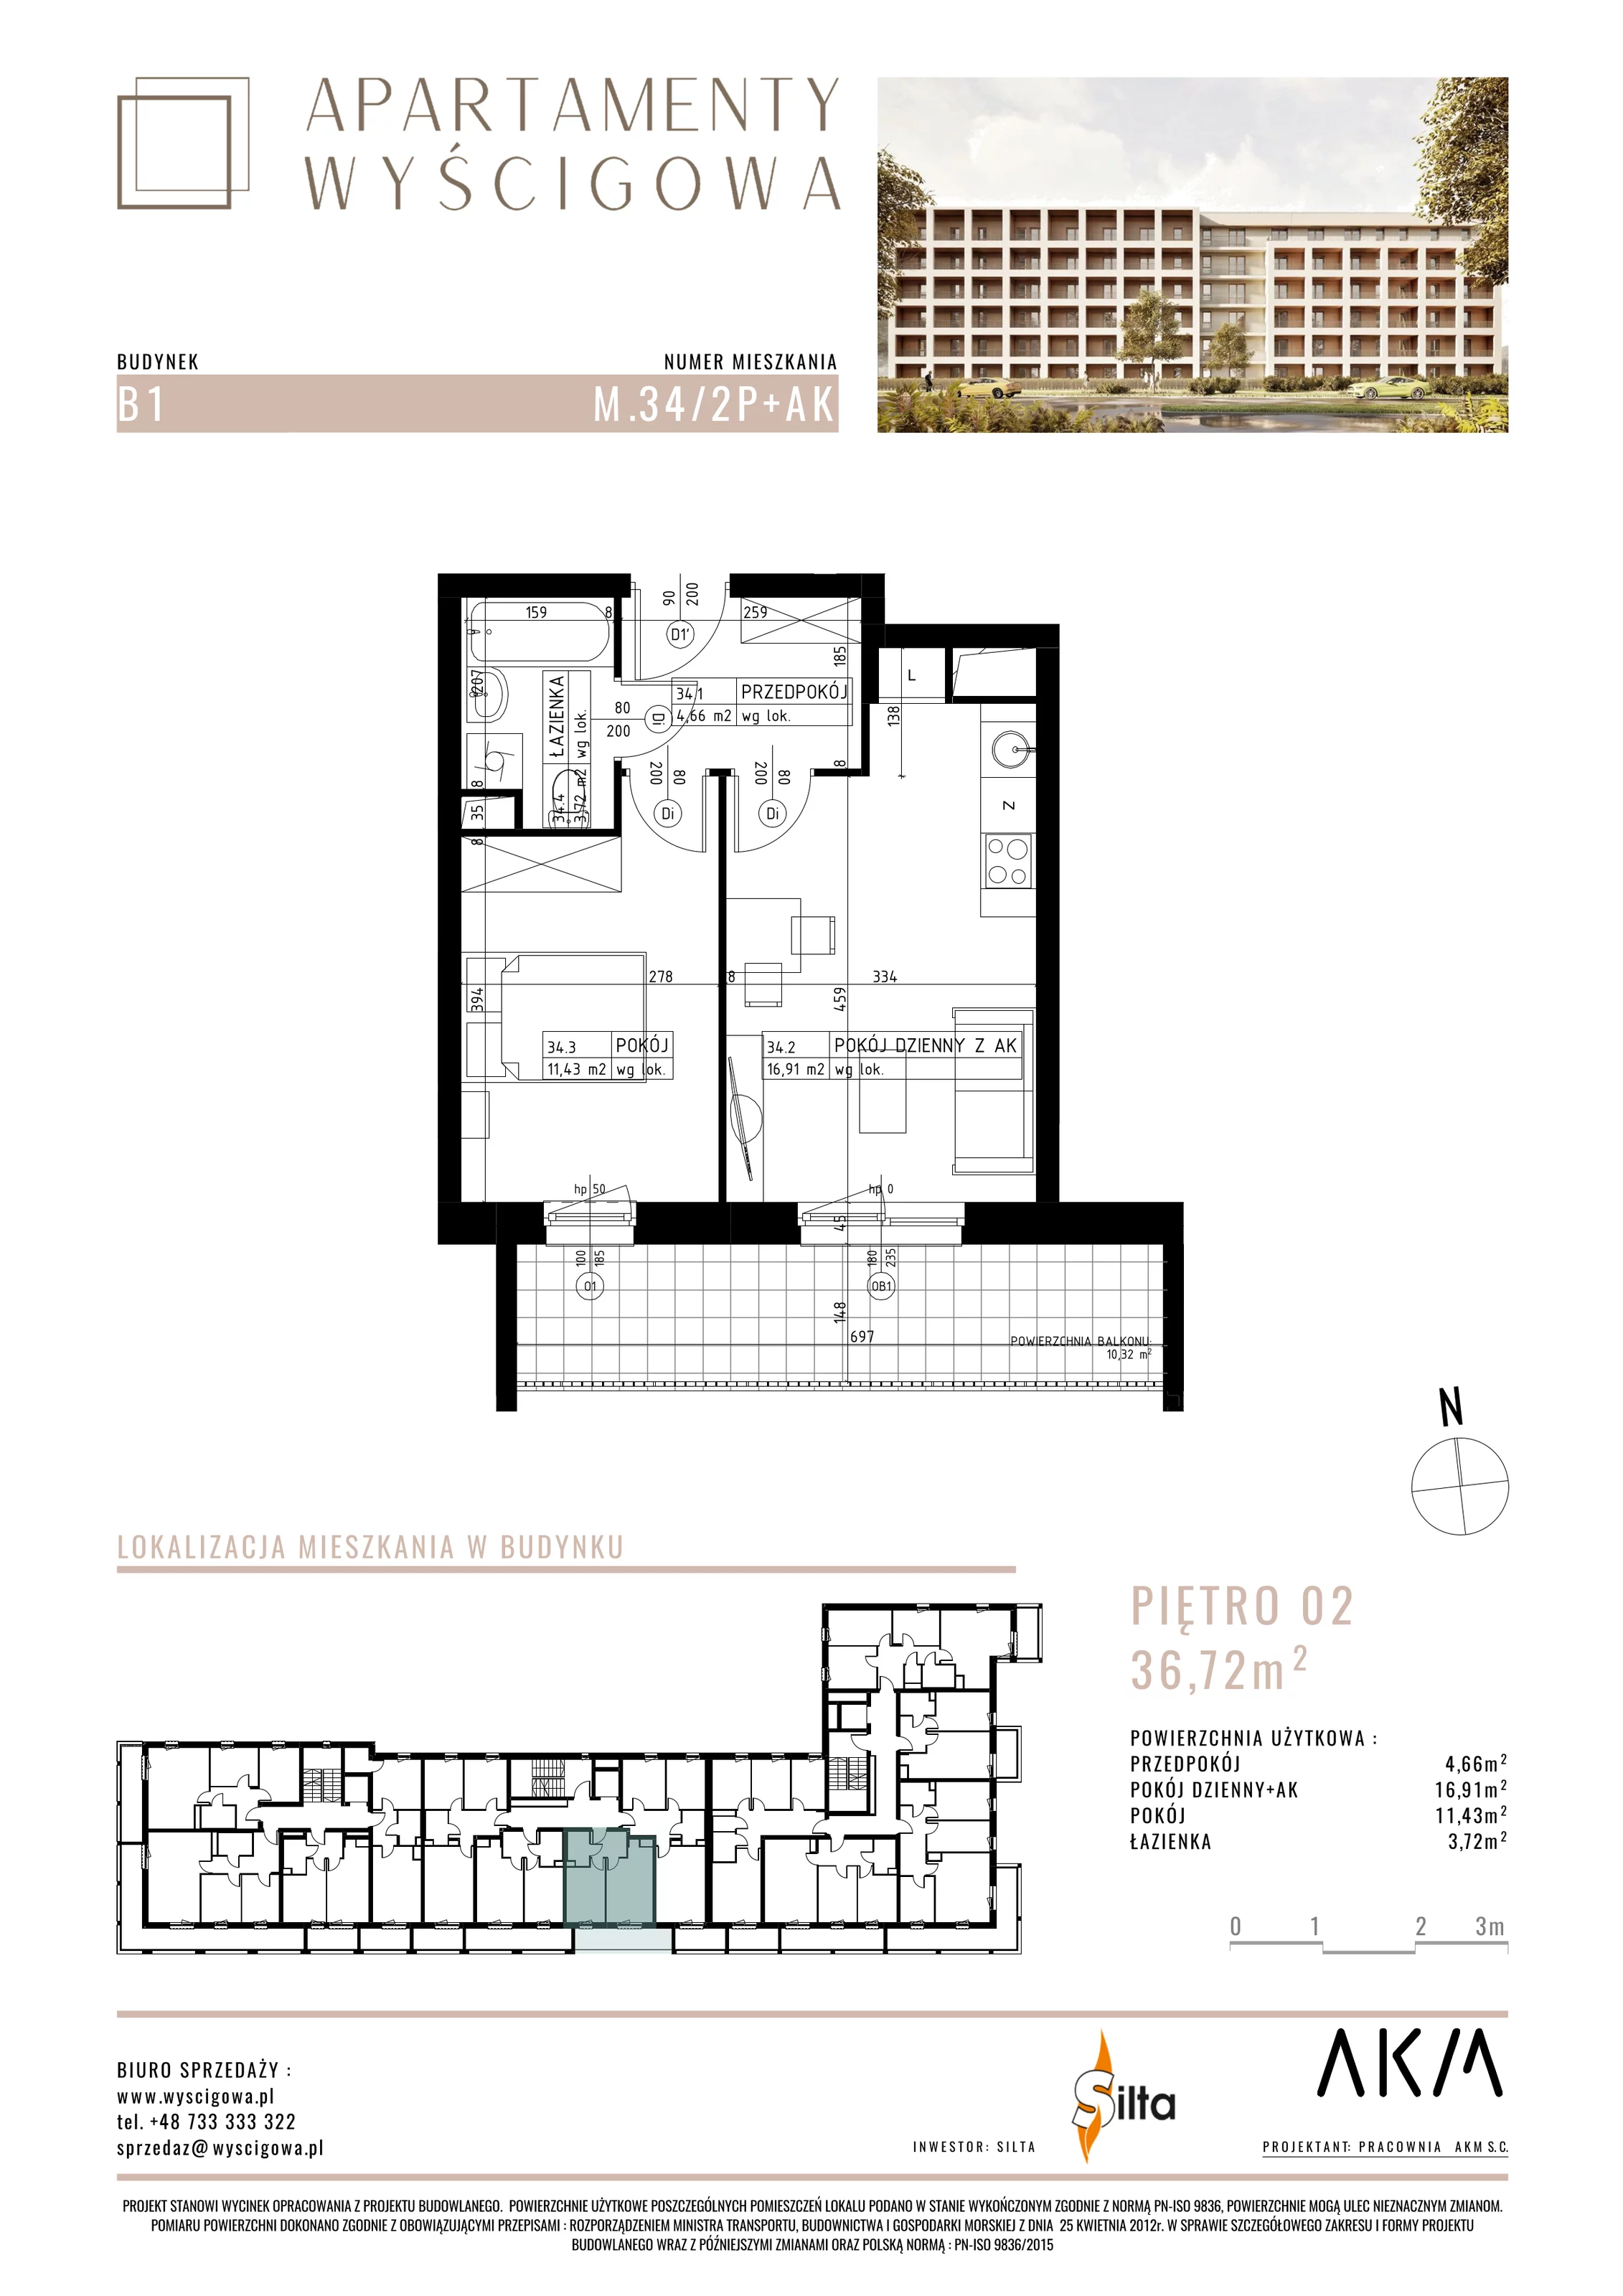 Mieszkanie 36,72 m², piętro 2, oferta nr B1.M34, Apartamenty Wyścigowa, Lublin, Dziesiąta, Dziesiąta, ul. Wyścigowa